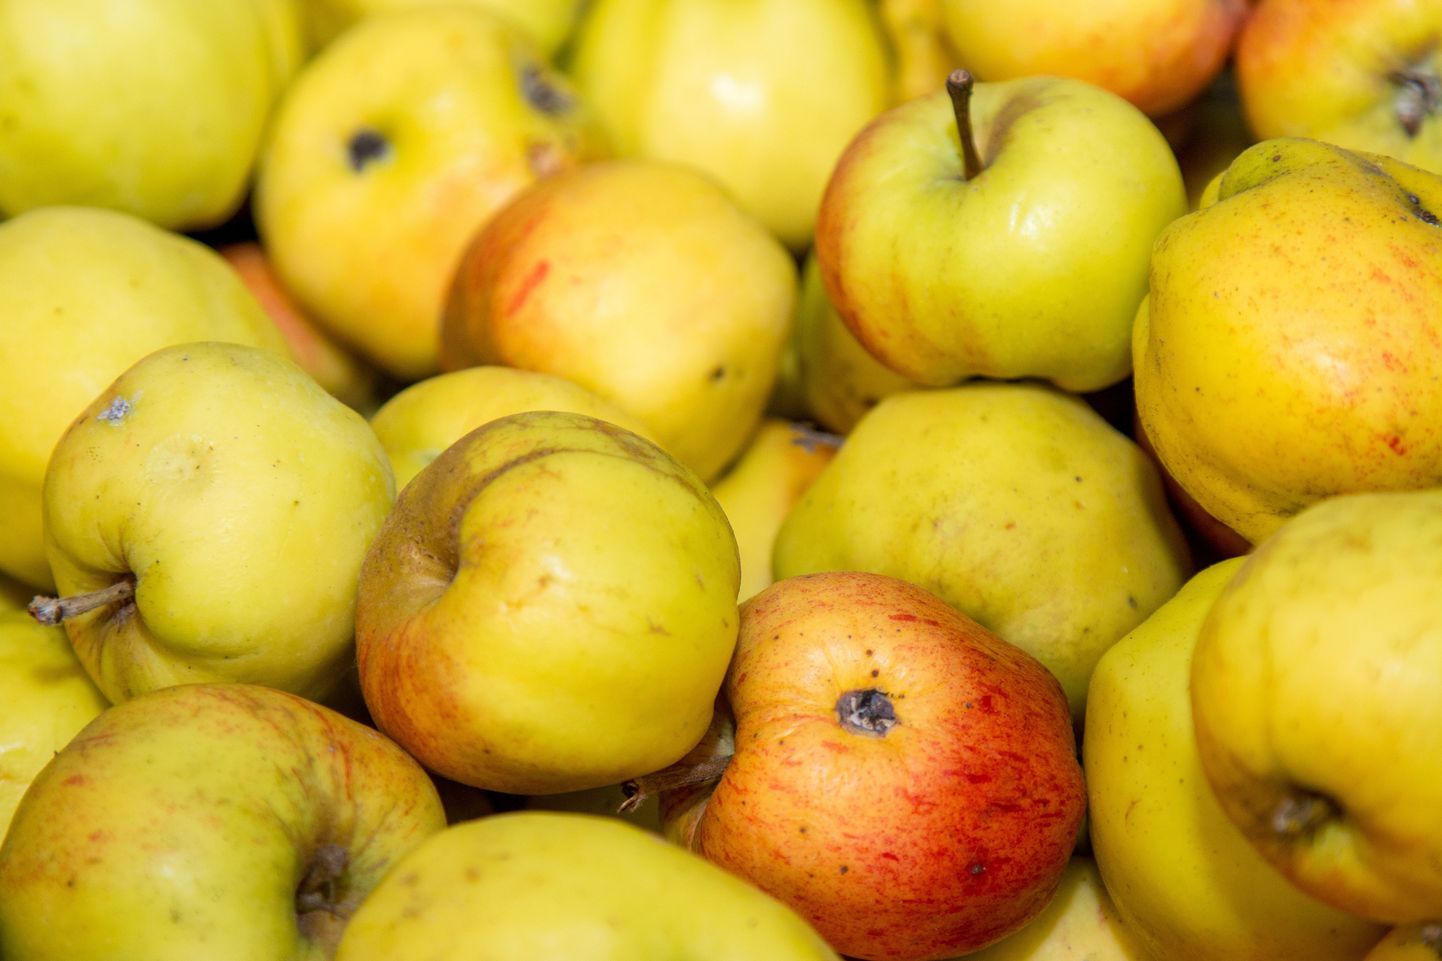 Õunad on suured etüleeni tootjad